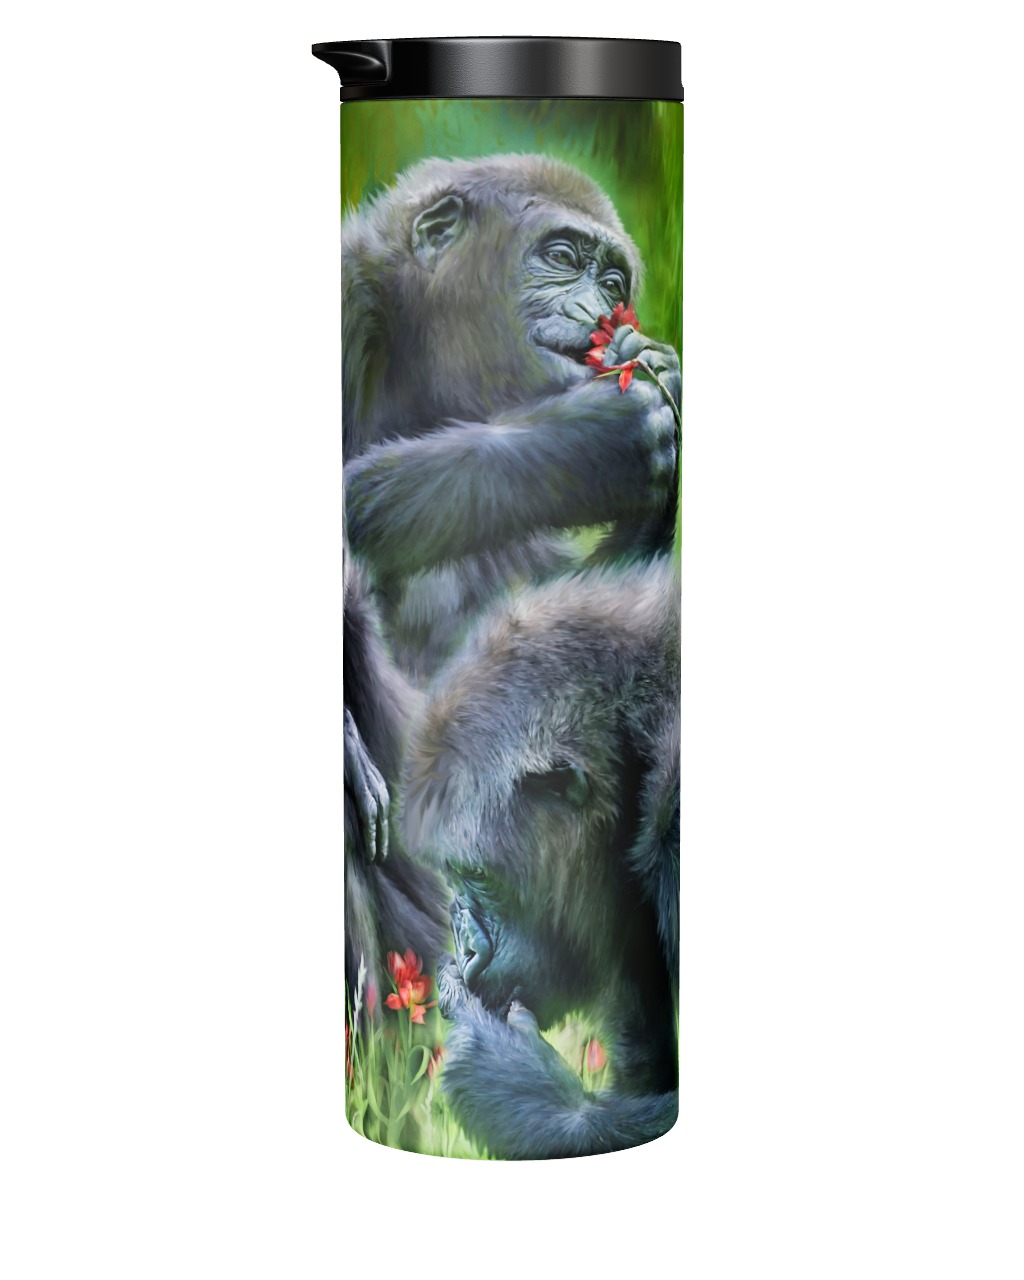 Ape Moods - Gorilla Tumbler